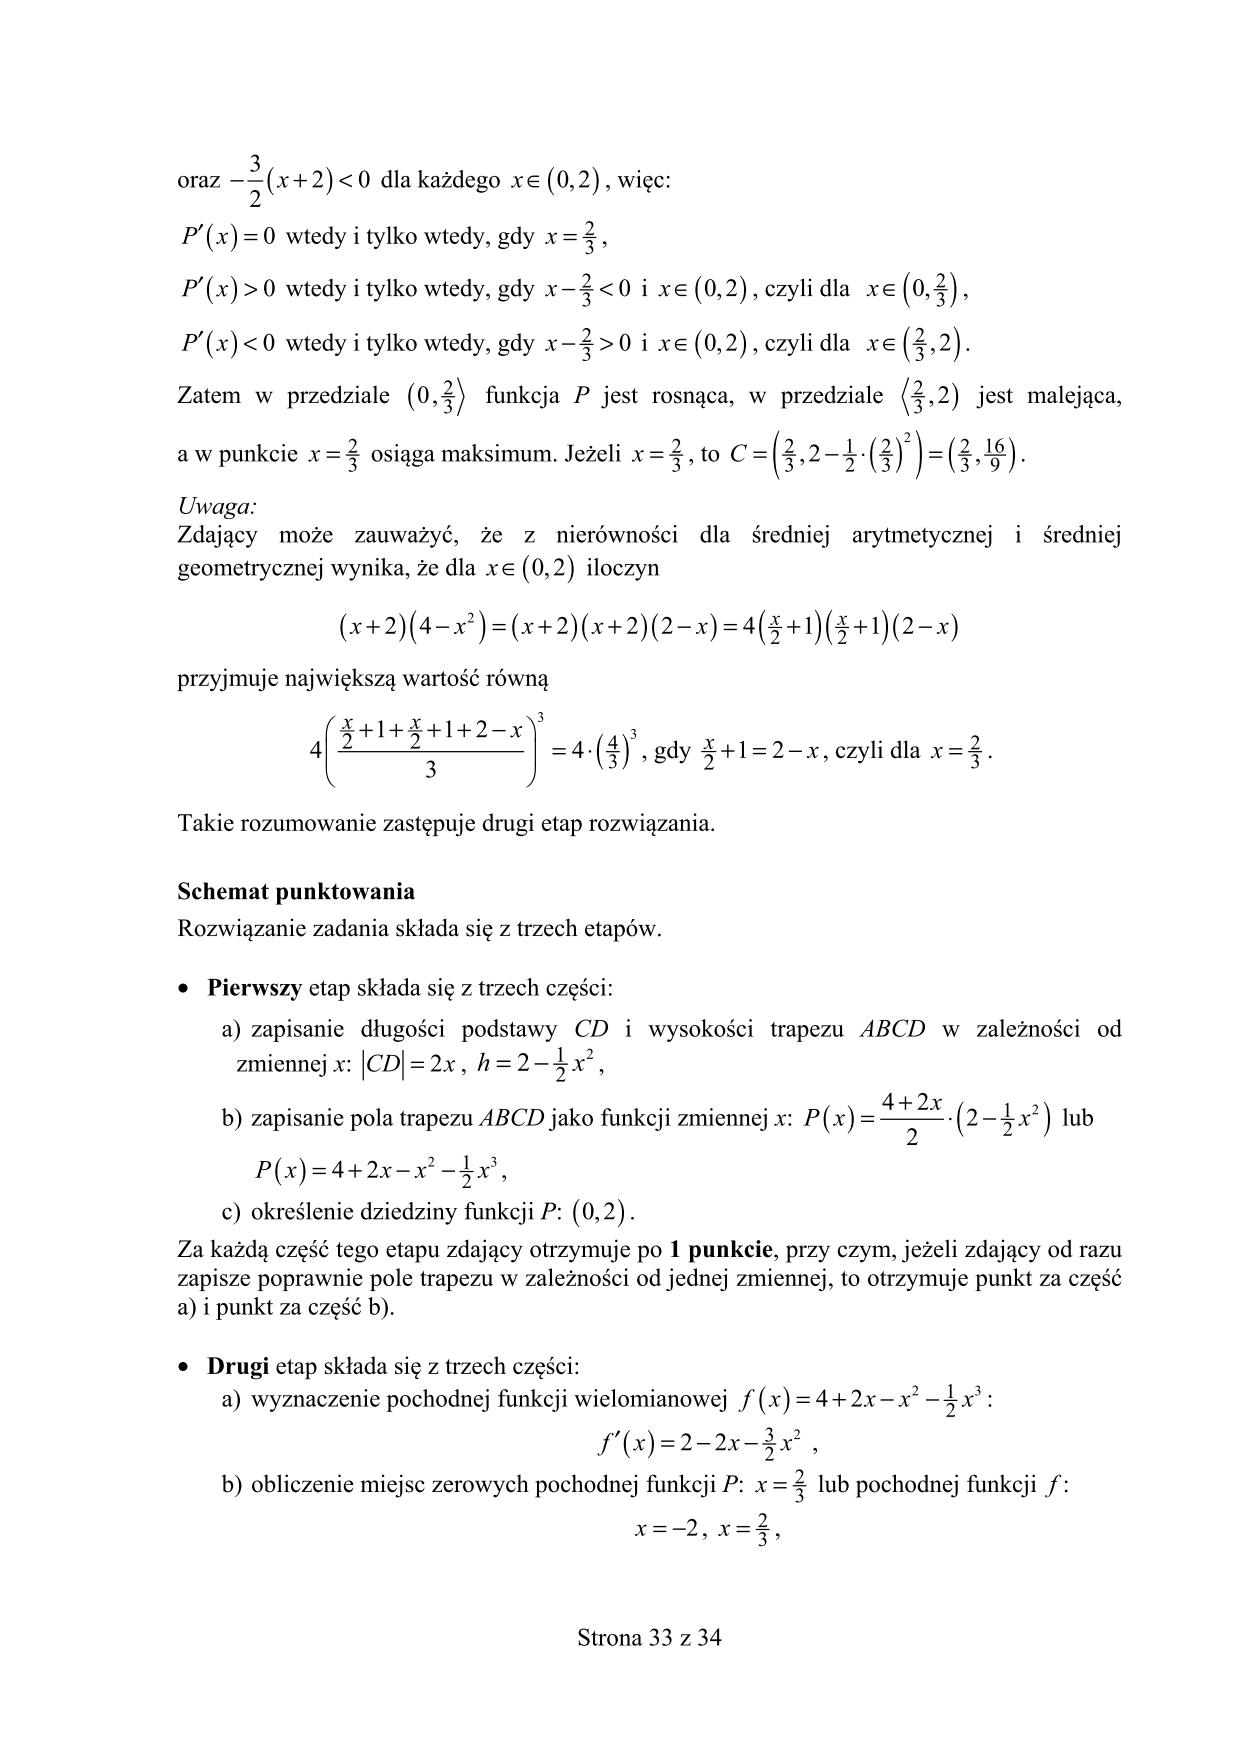 matura-2016-matematyka-poziom-rozszerzony-odpowiedzi - 33